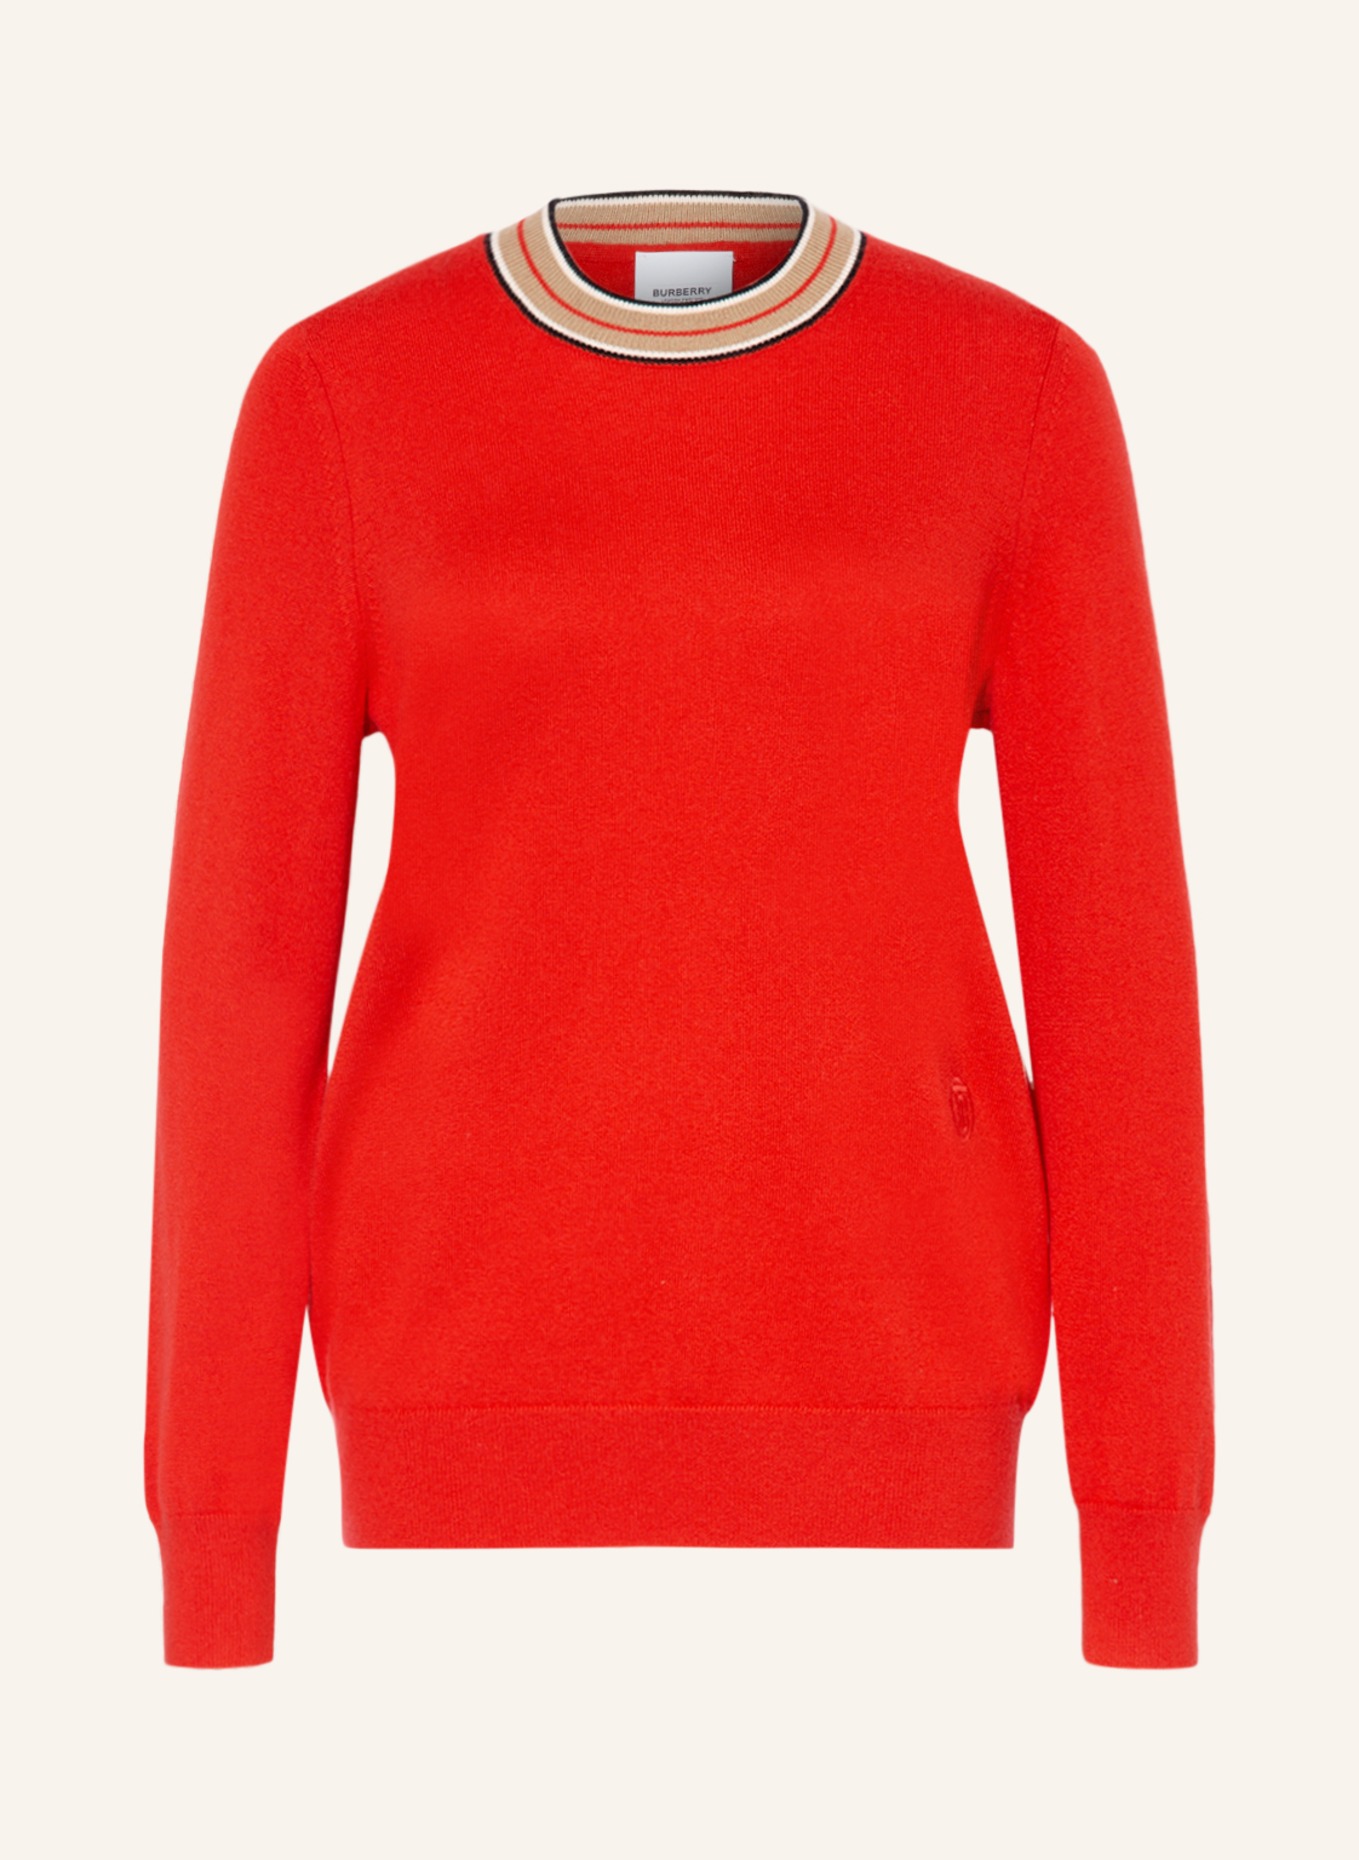 BURBERRY Cashmere-Pullover TILDA, Farbe: ROT (Bild 1)